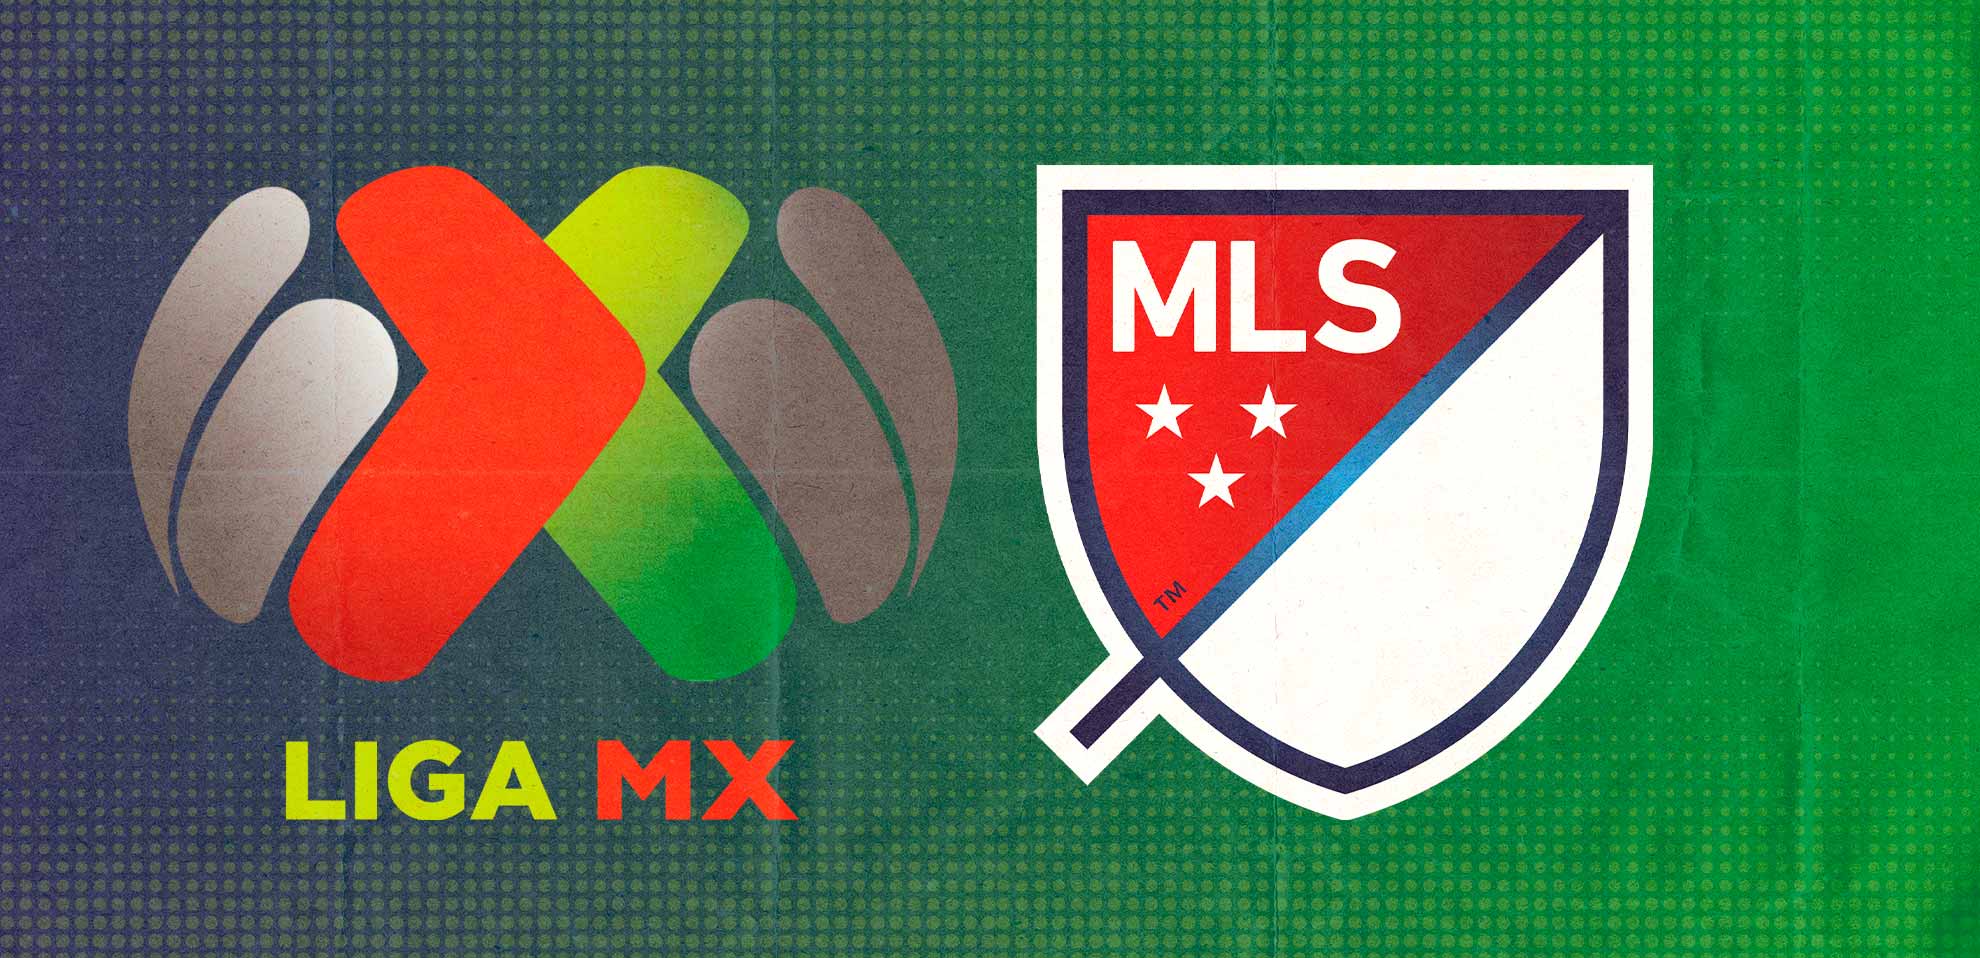 Fusión Liga MX y MLS